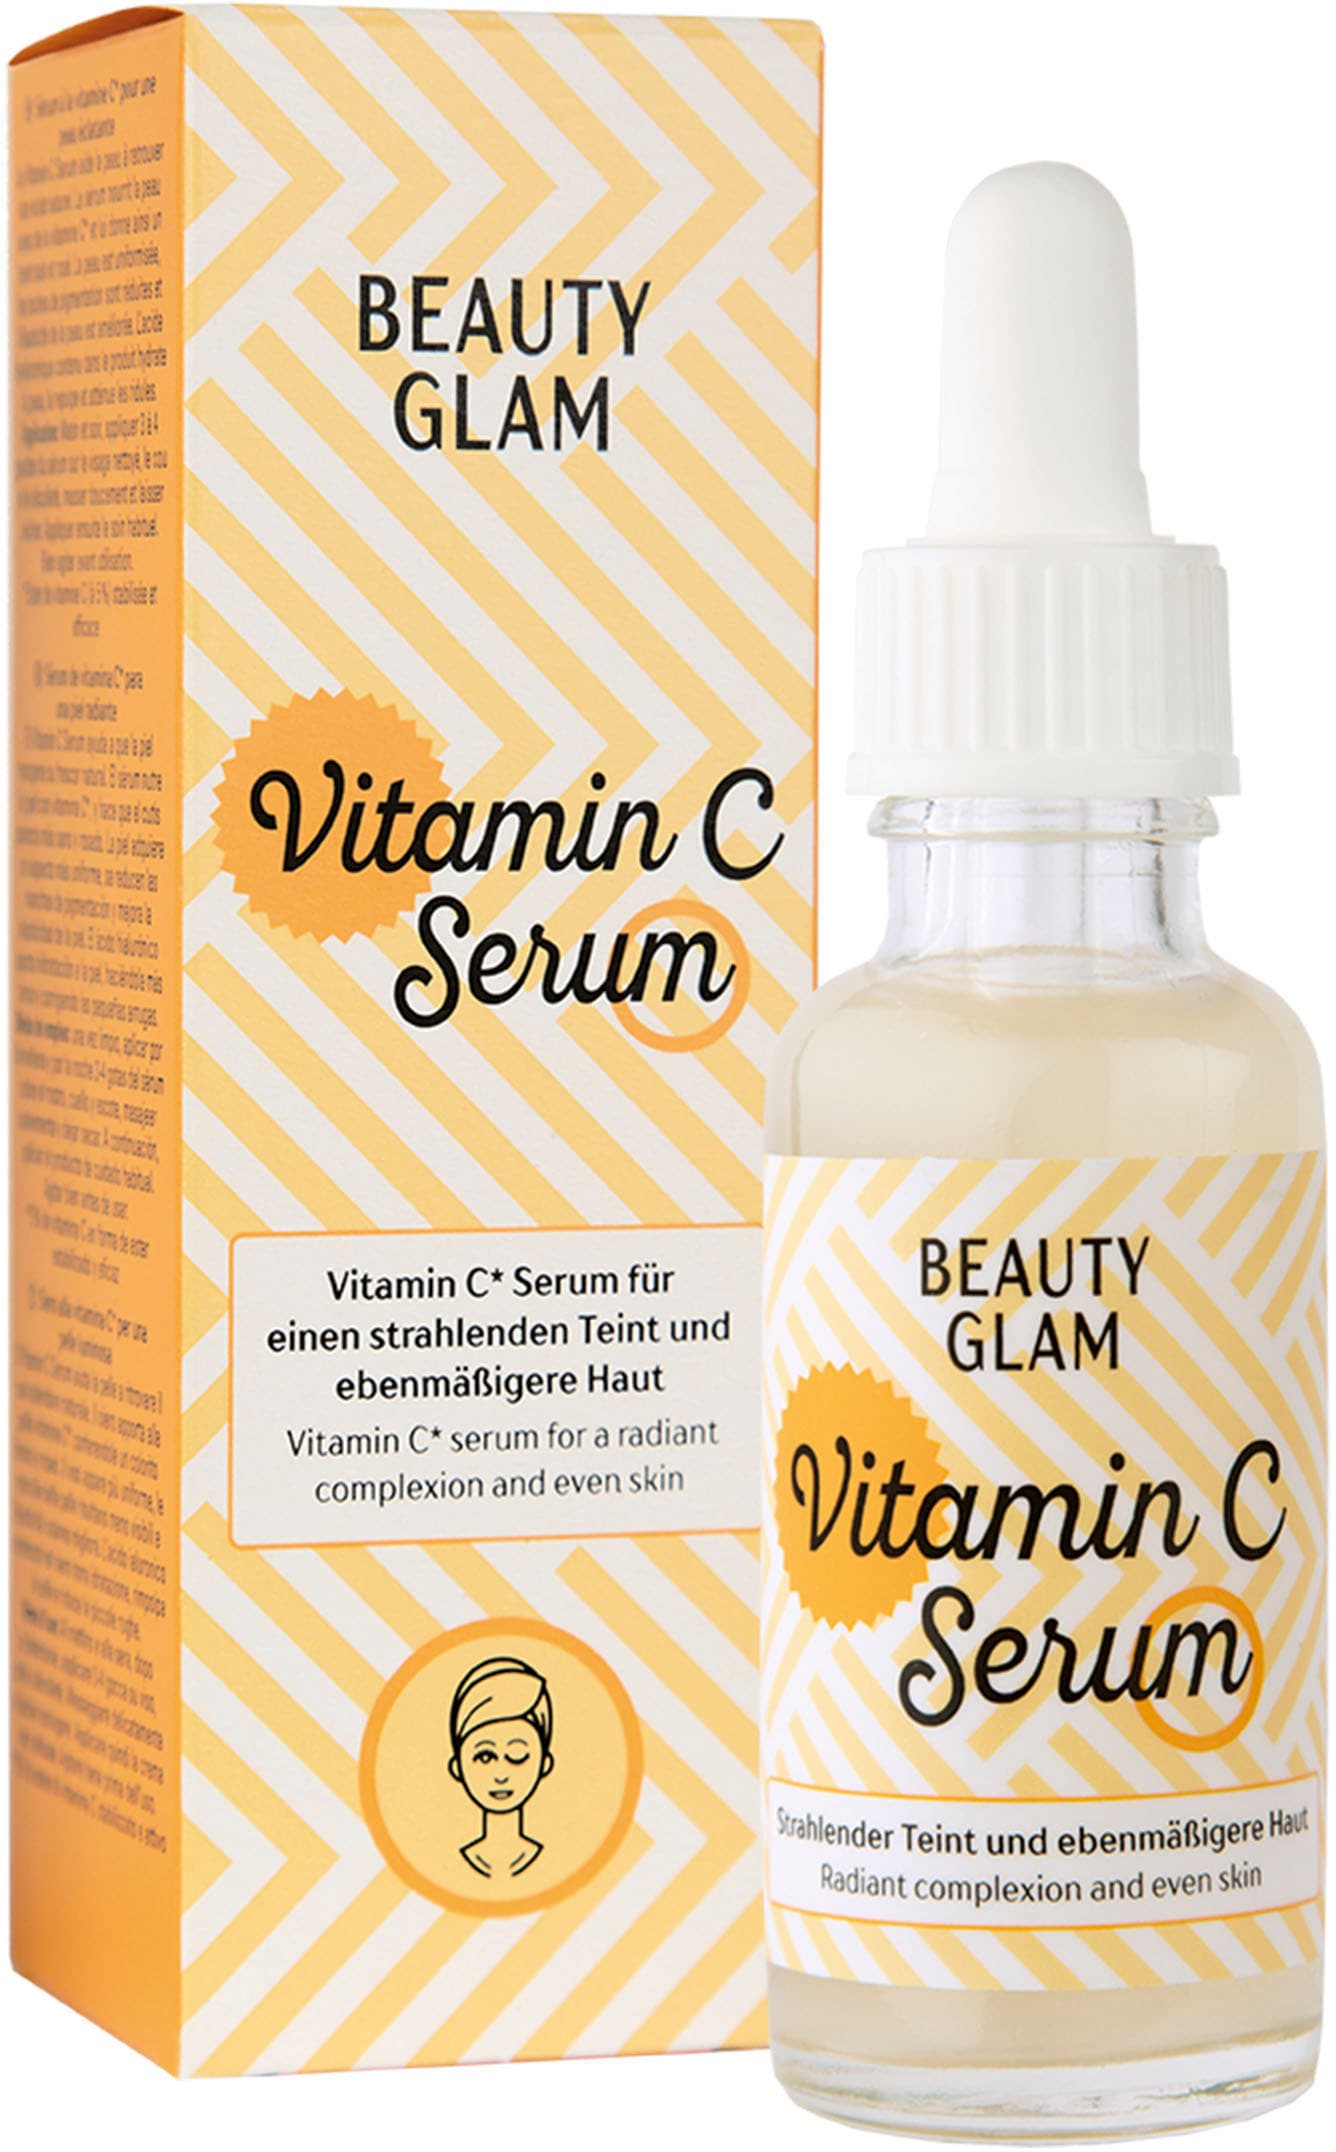 Serum« GLAM BEAUTY Glam Vitamin bei »Beauty C Gesichtsserum OTTOversand